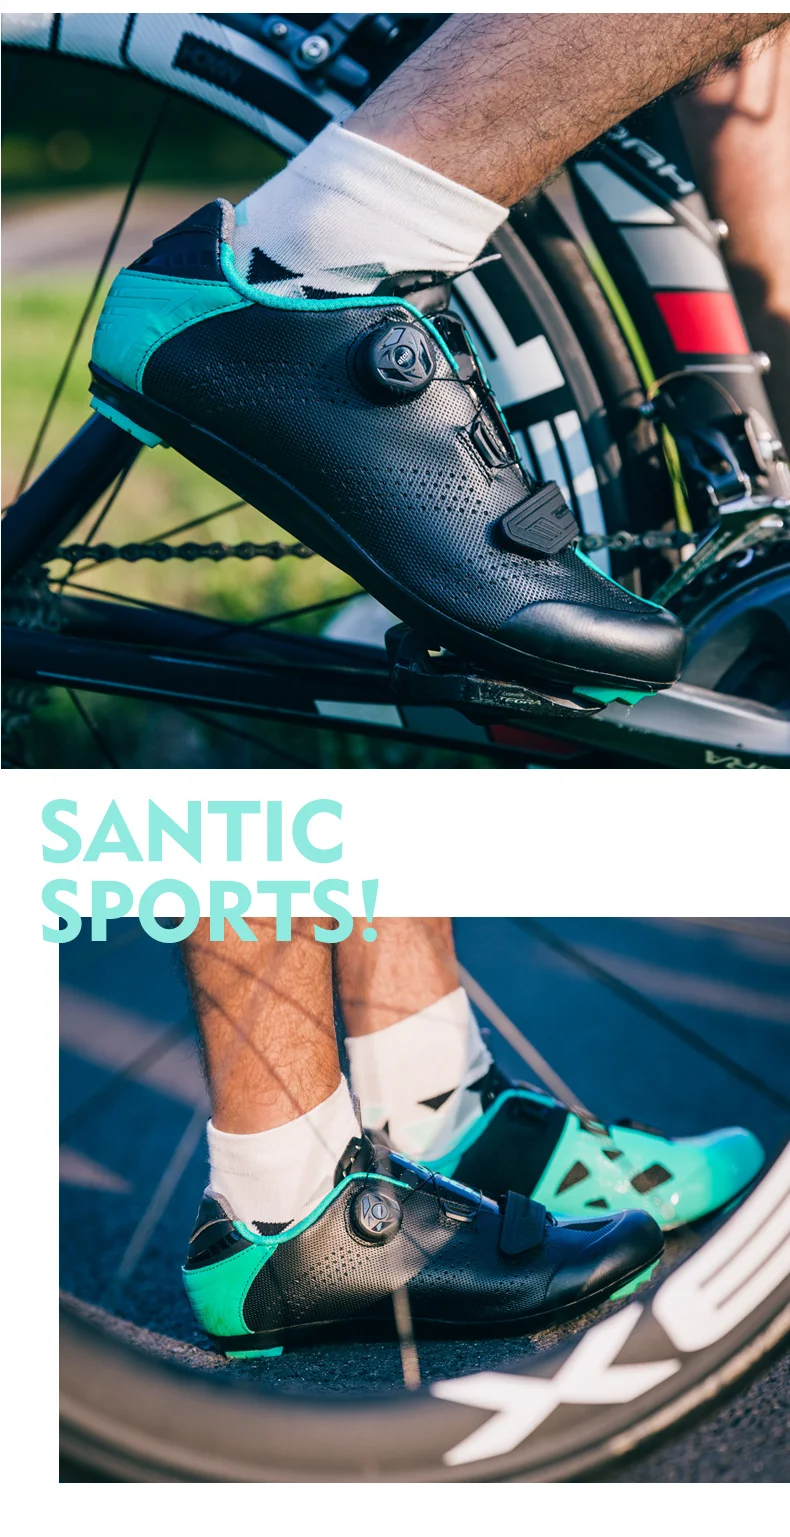 Santic/Женская обувь для шоссейного велоспорта; обувь с замком для шоссейного велосипеда; велосипедная обувь с нейлоновой подошвой для мужчин и женщин